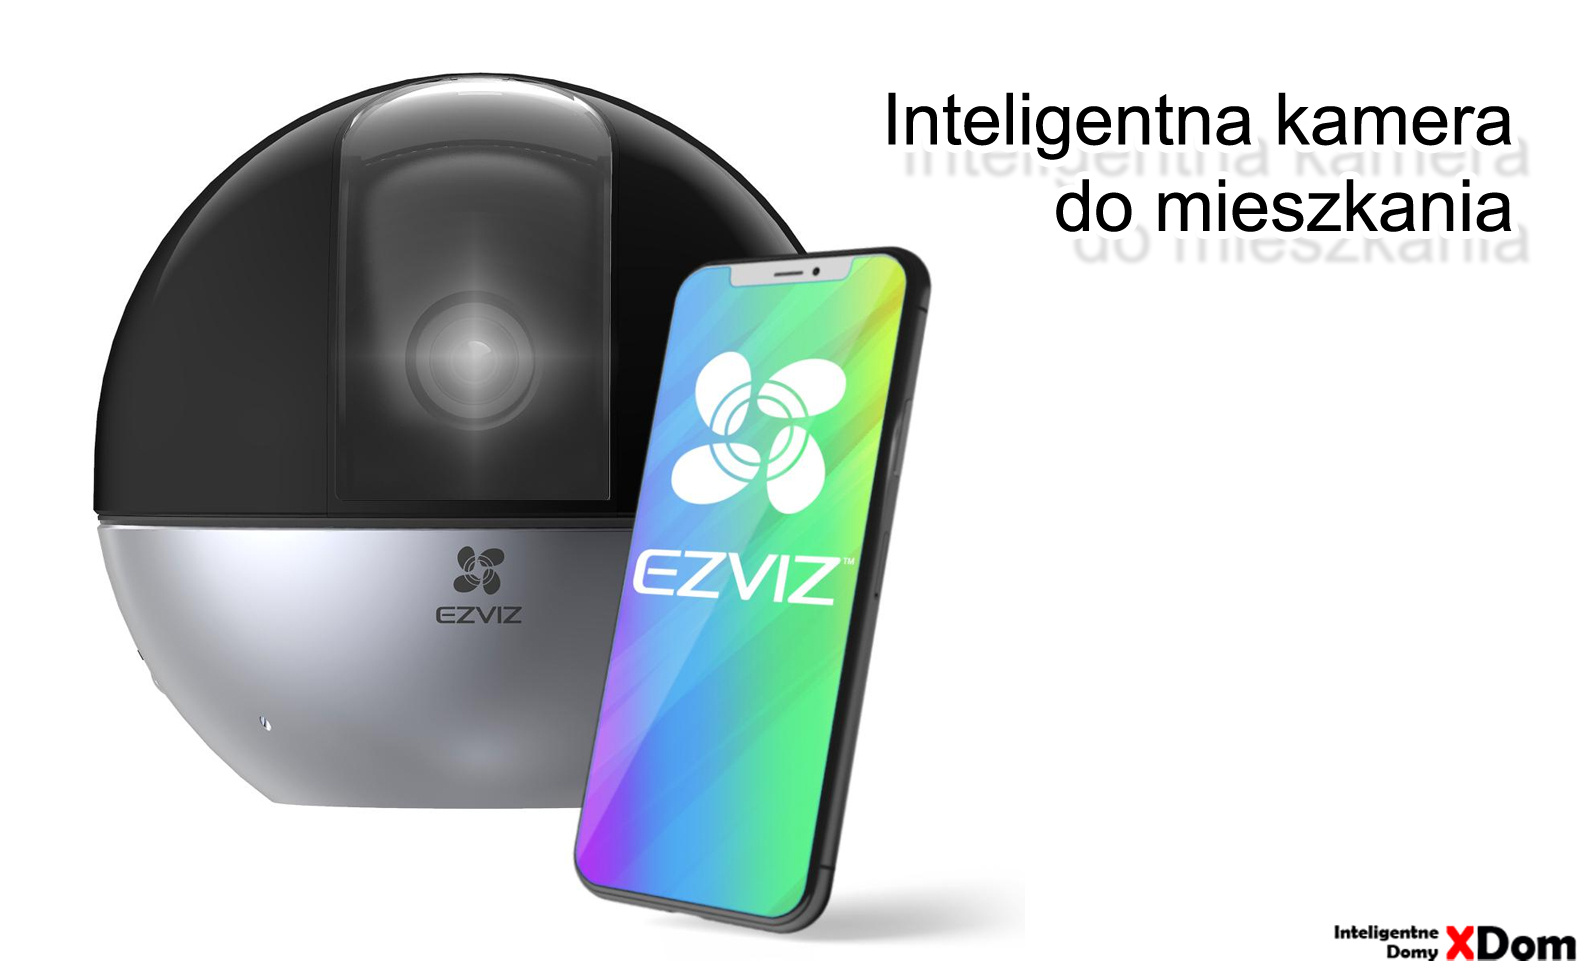 Inteligentna ochrona dla twojego domu - opinie o kamerze IP EZVIZ E6 3K Home Kit